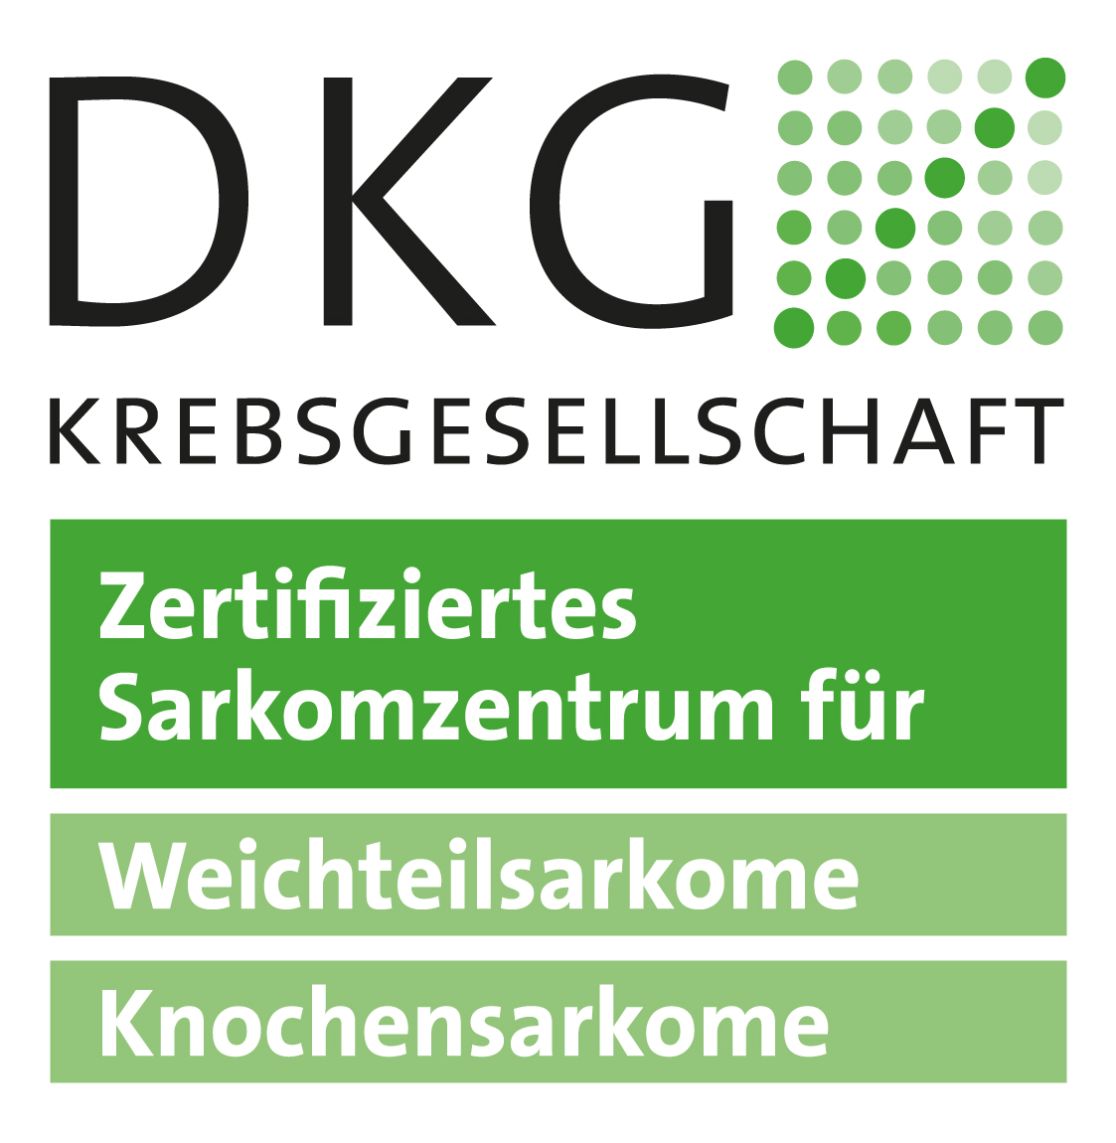 Sarkomzentrum - Deutsche Krebsgesellschaft e.V.